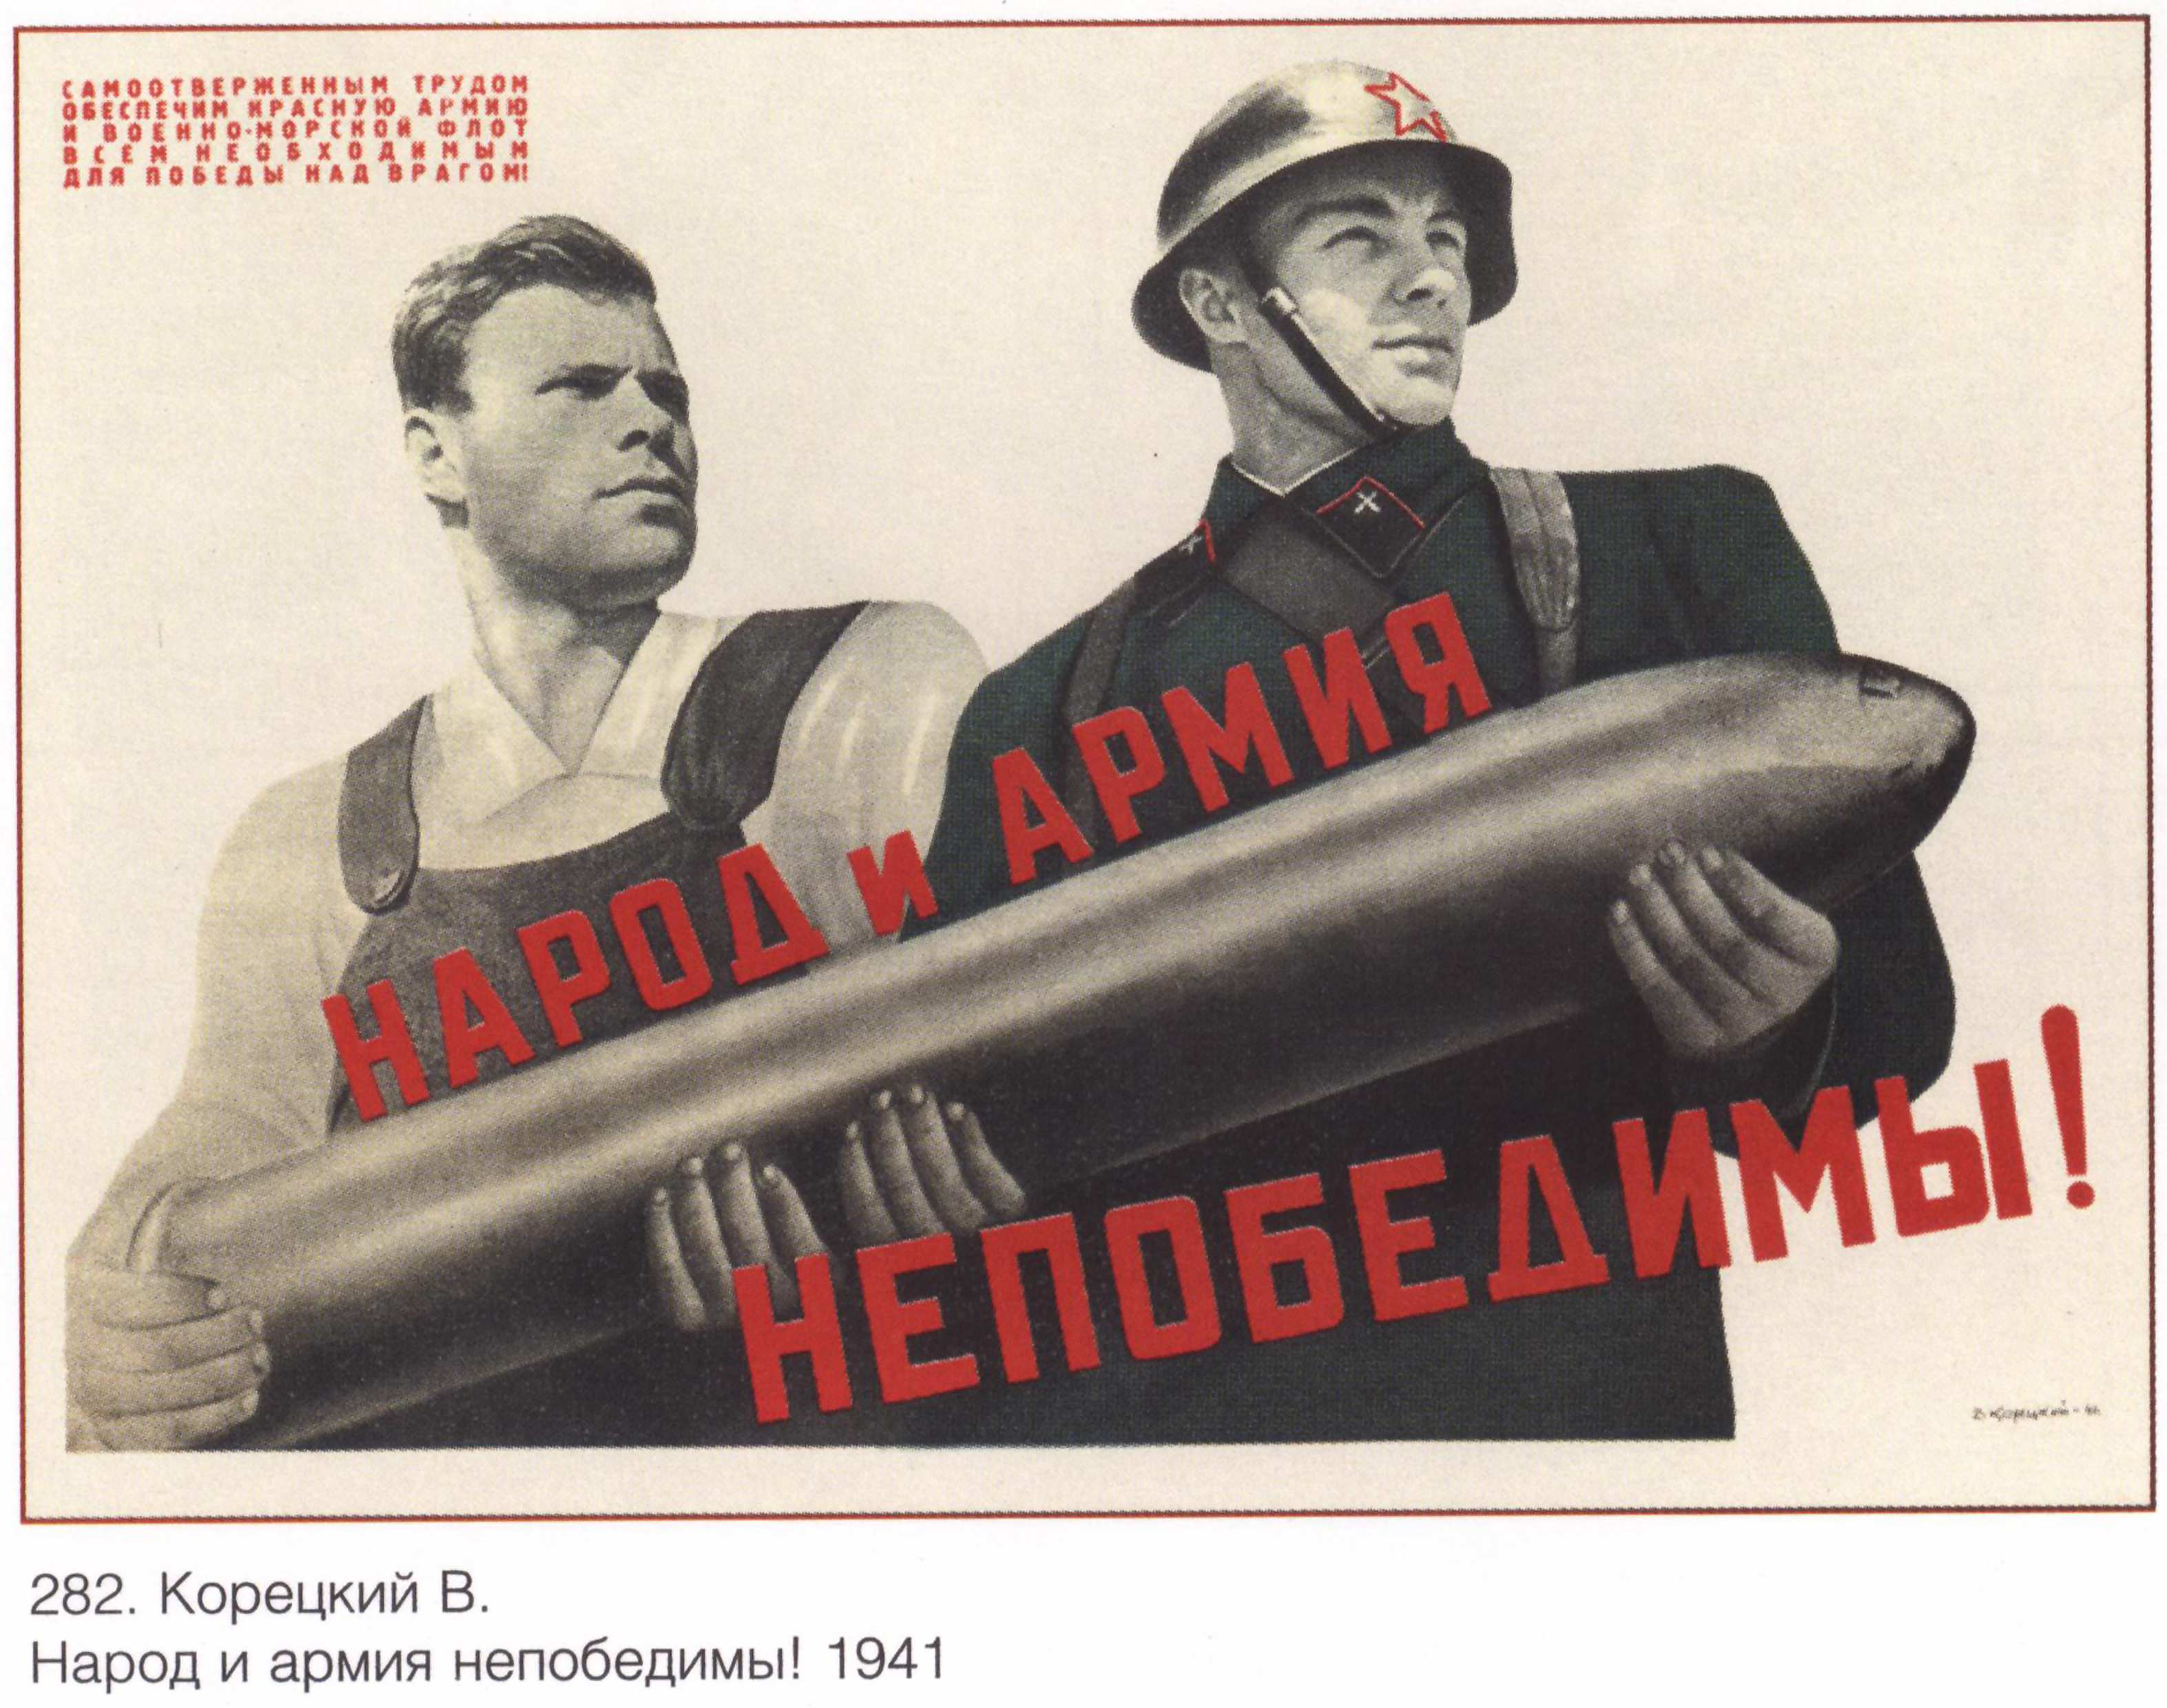 Народ и партия едины. Народ и армия непобедимы плакат. Военные агитационные плакаты. Советские военные плакаты. Народ и армия едины плакат.